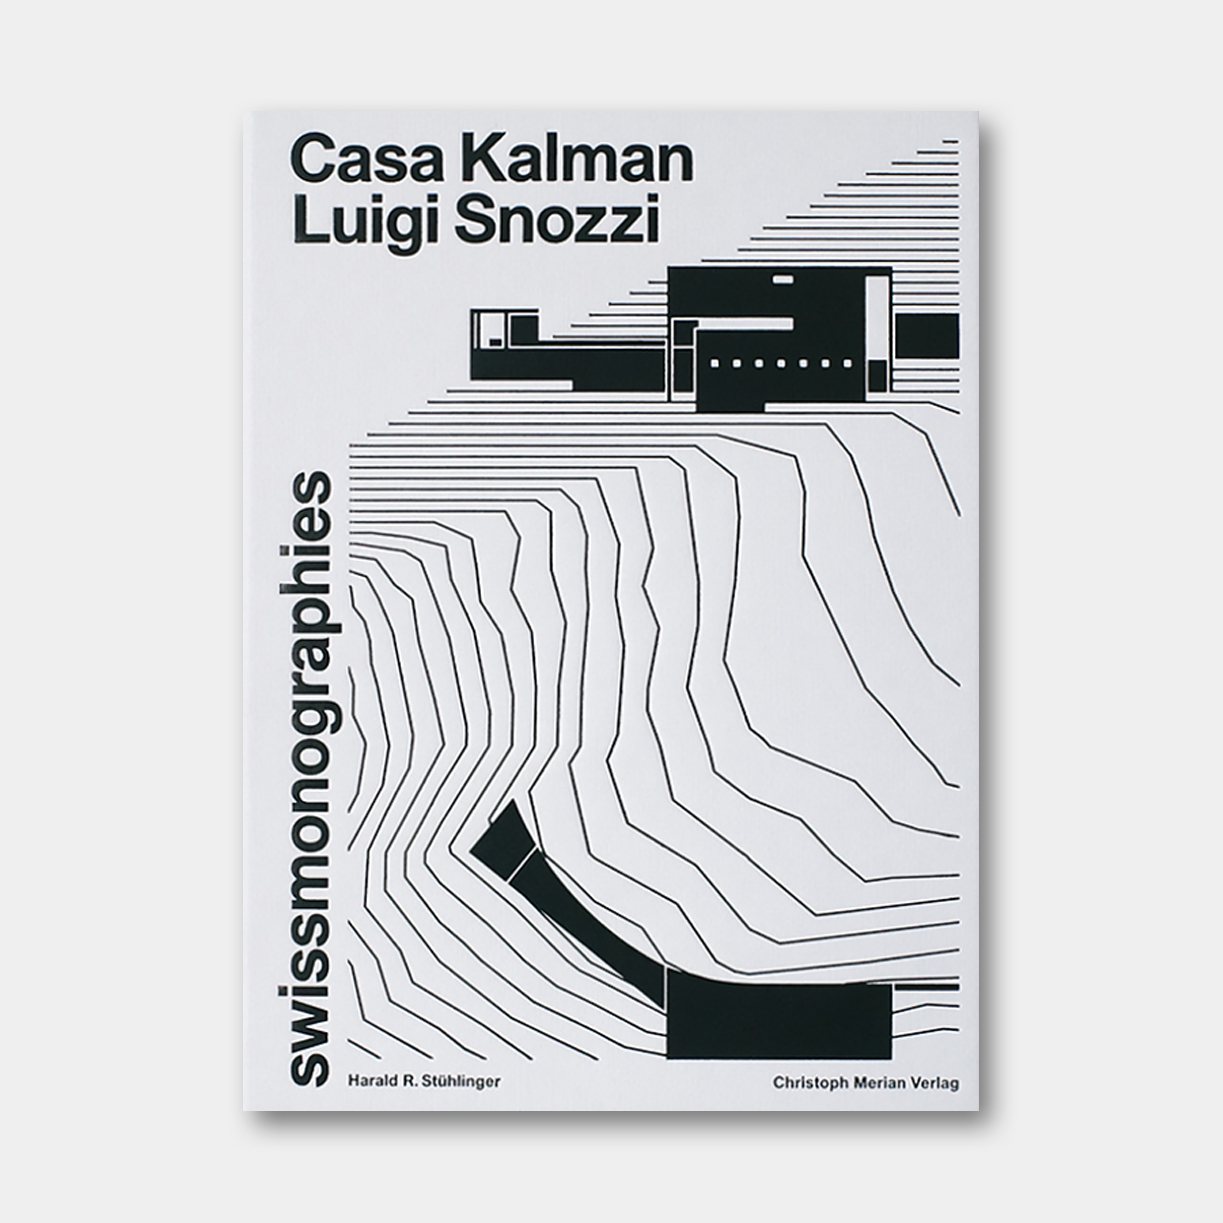 瑞士原版 | “提契诺学派”经典 - 路易吉·斯诺奇：卡尔曼别墅 Luigi Snozzi: Casa Kalman